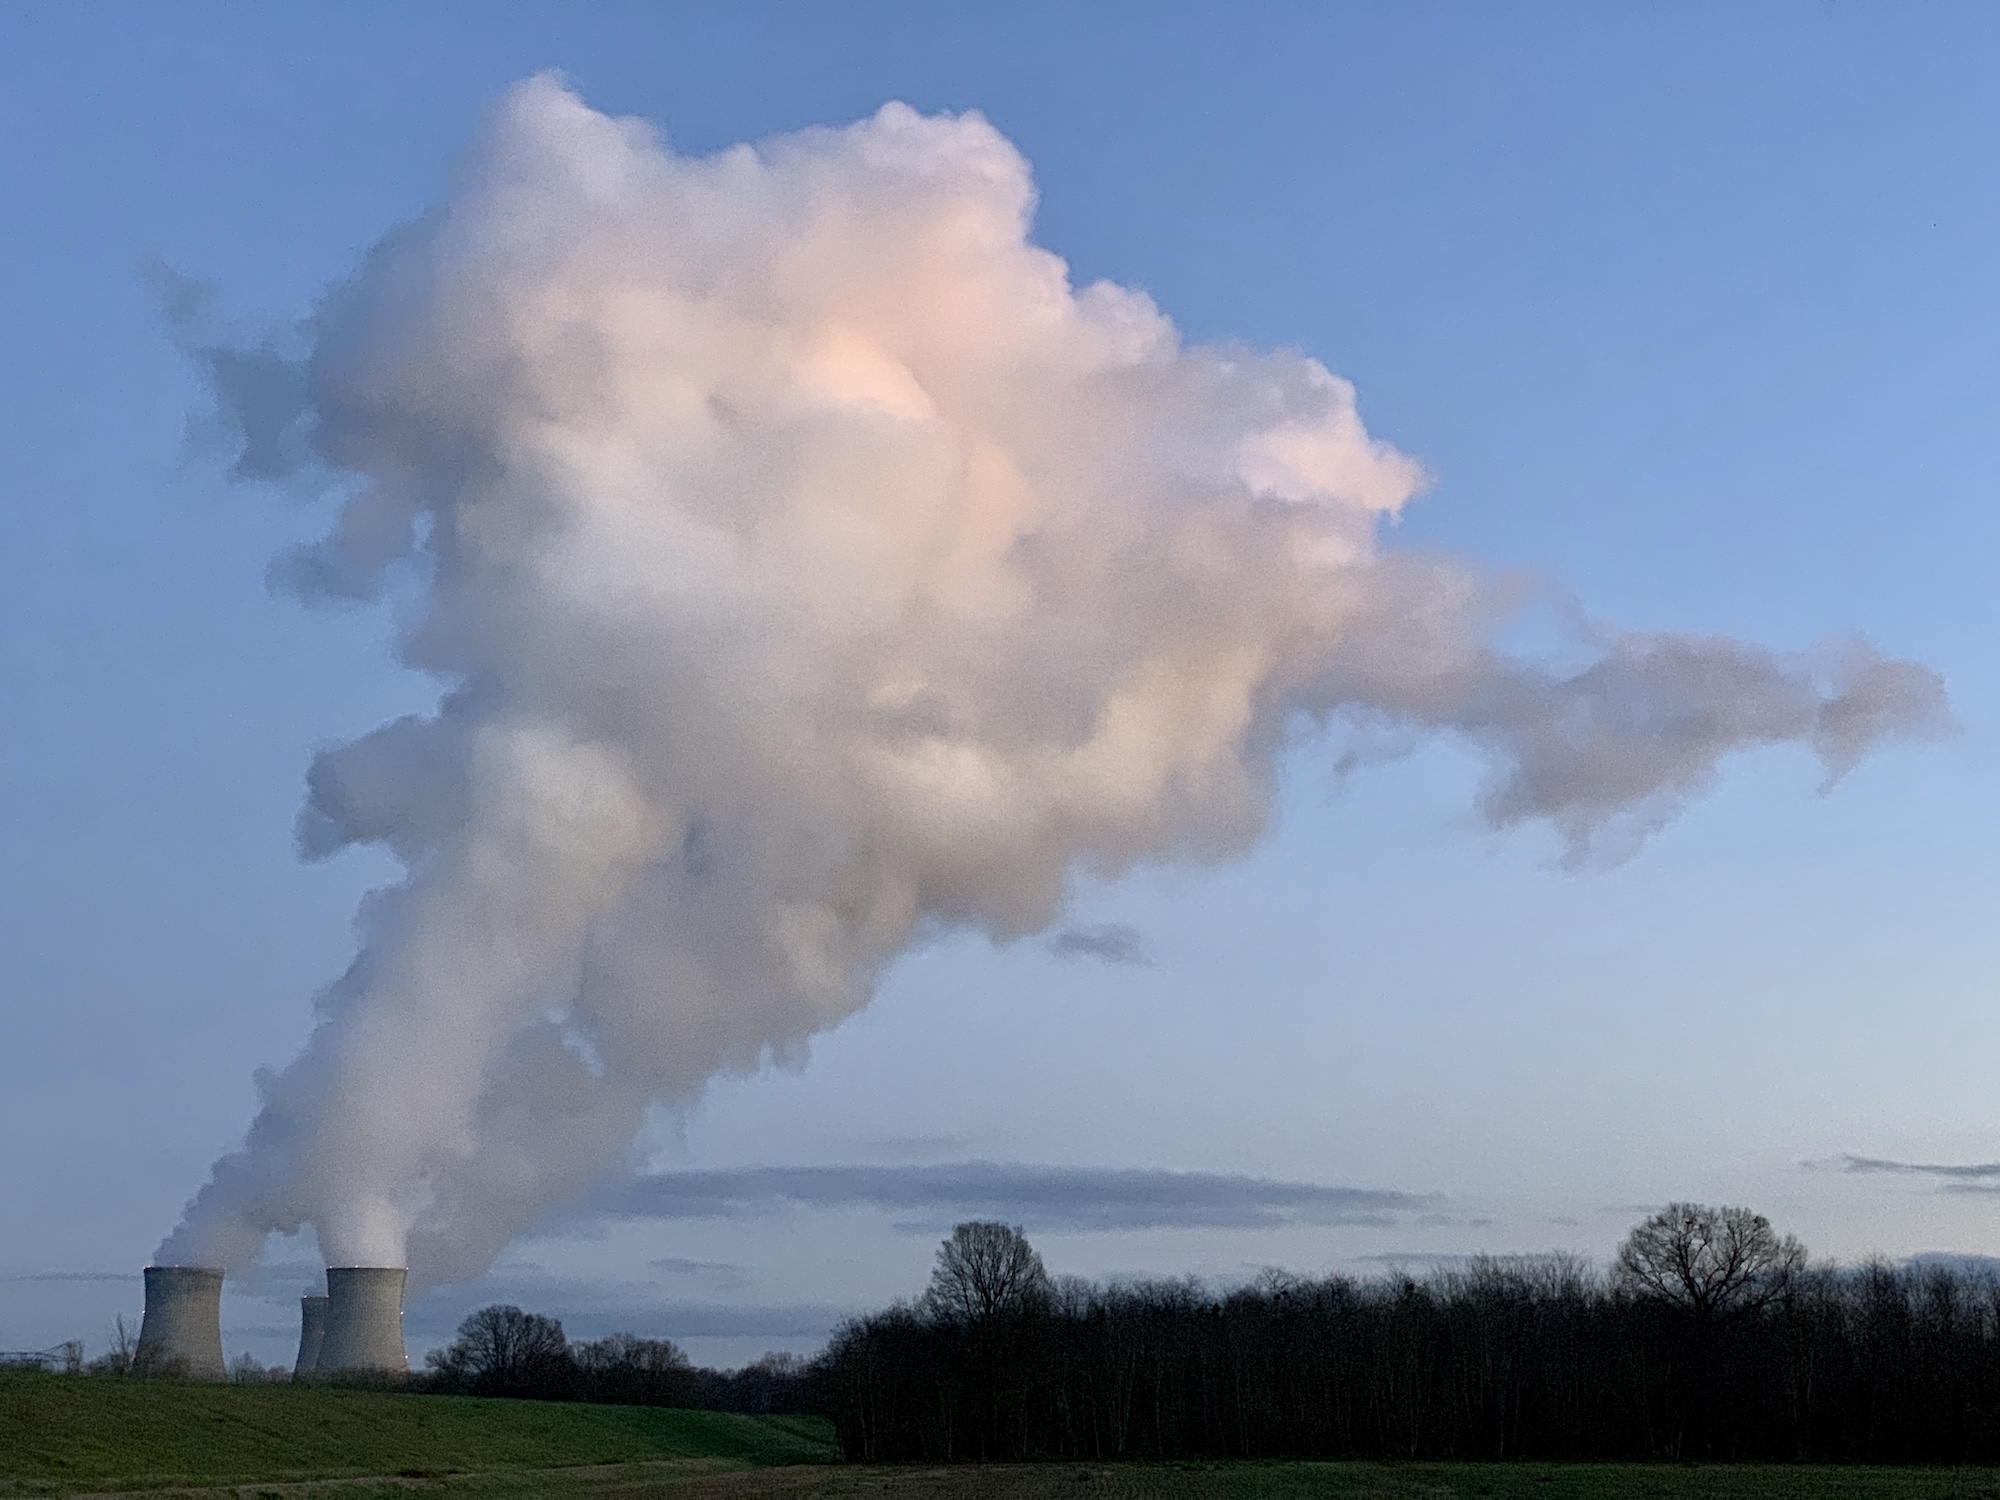 Nuage de vapeur s'échappant d'une centrale se découpant sur un ciel bleu à la tombé du jour.